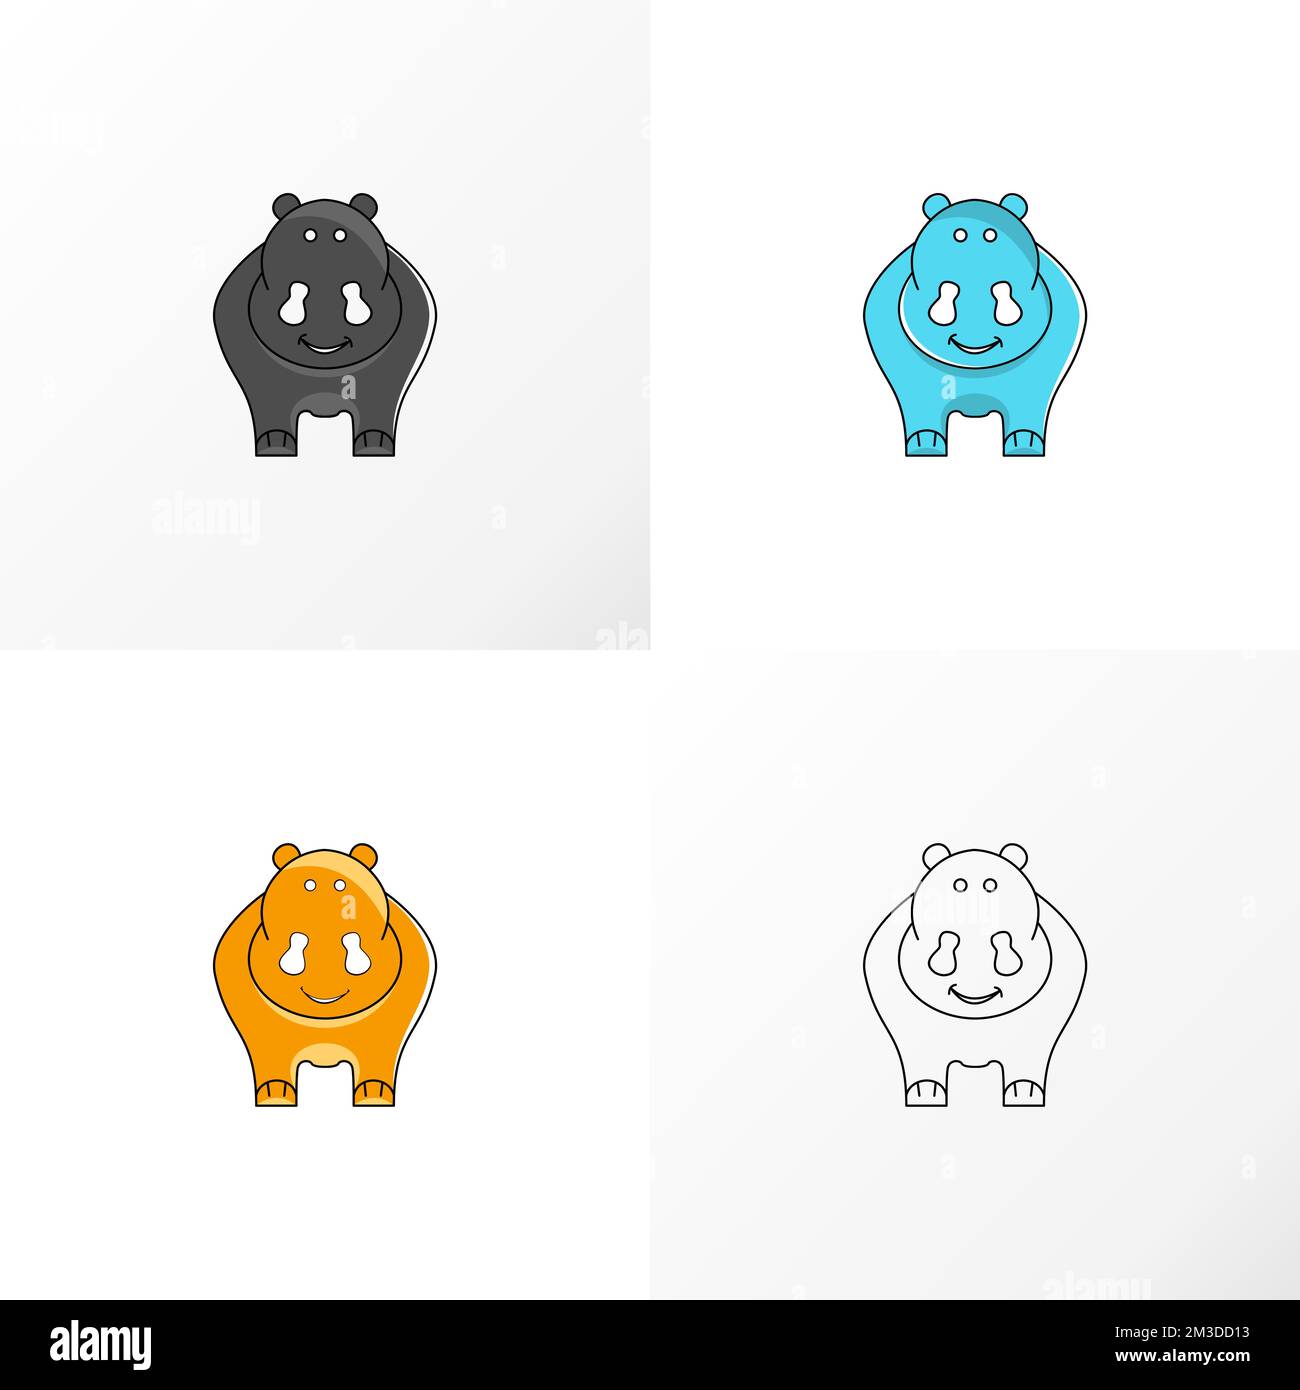 Carino e adorabile grasso rinoceronte immagine grafica icona logo disegno astratto concetto vettore stock. Può essere utilizzato come animale o cartoon associato a simboli. Illustrazione Vettoriale